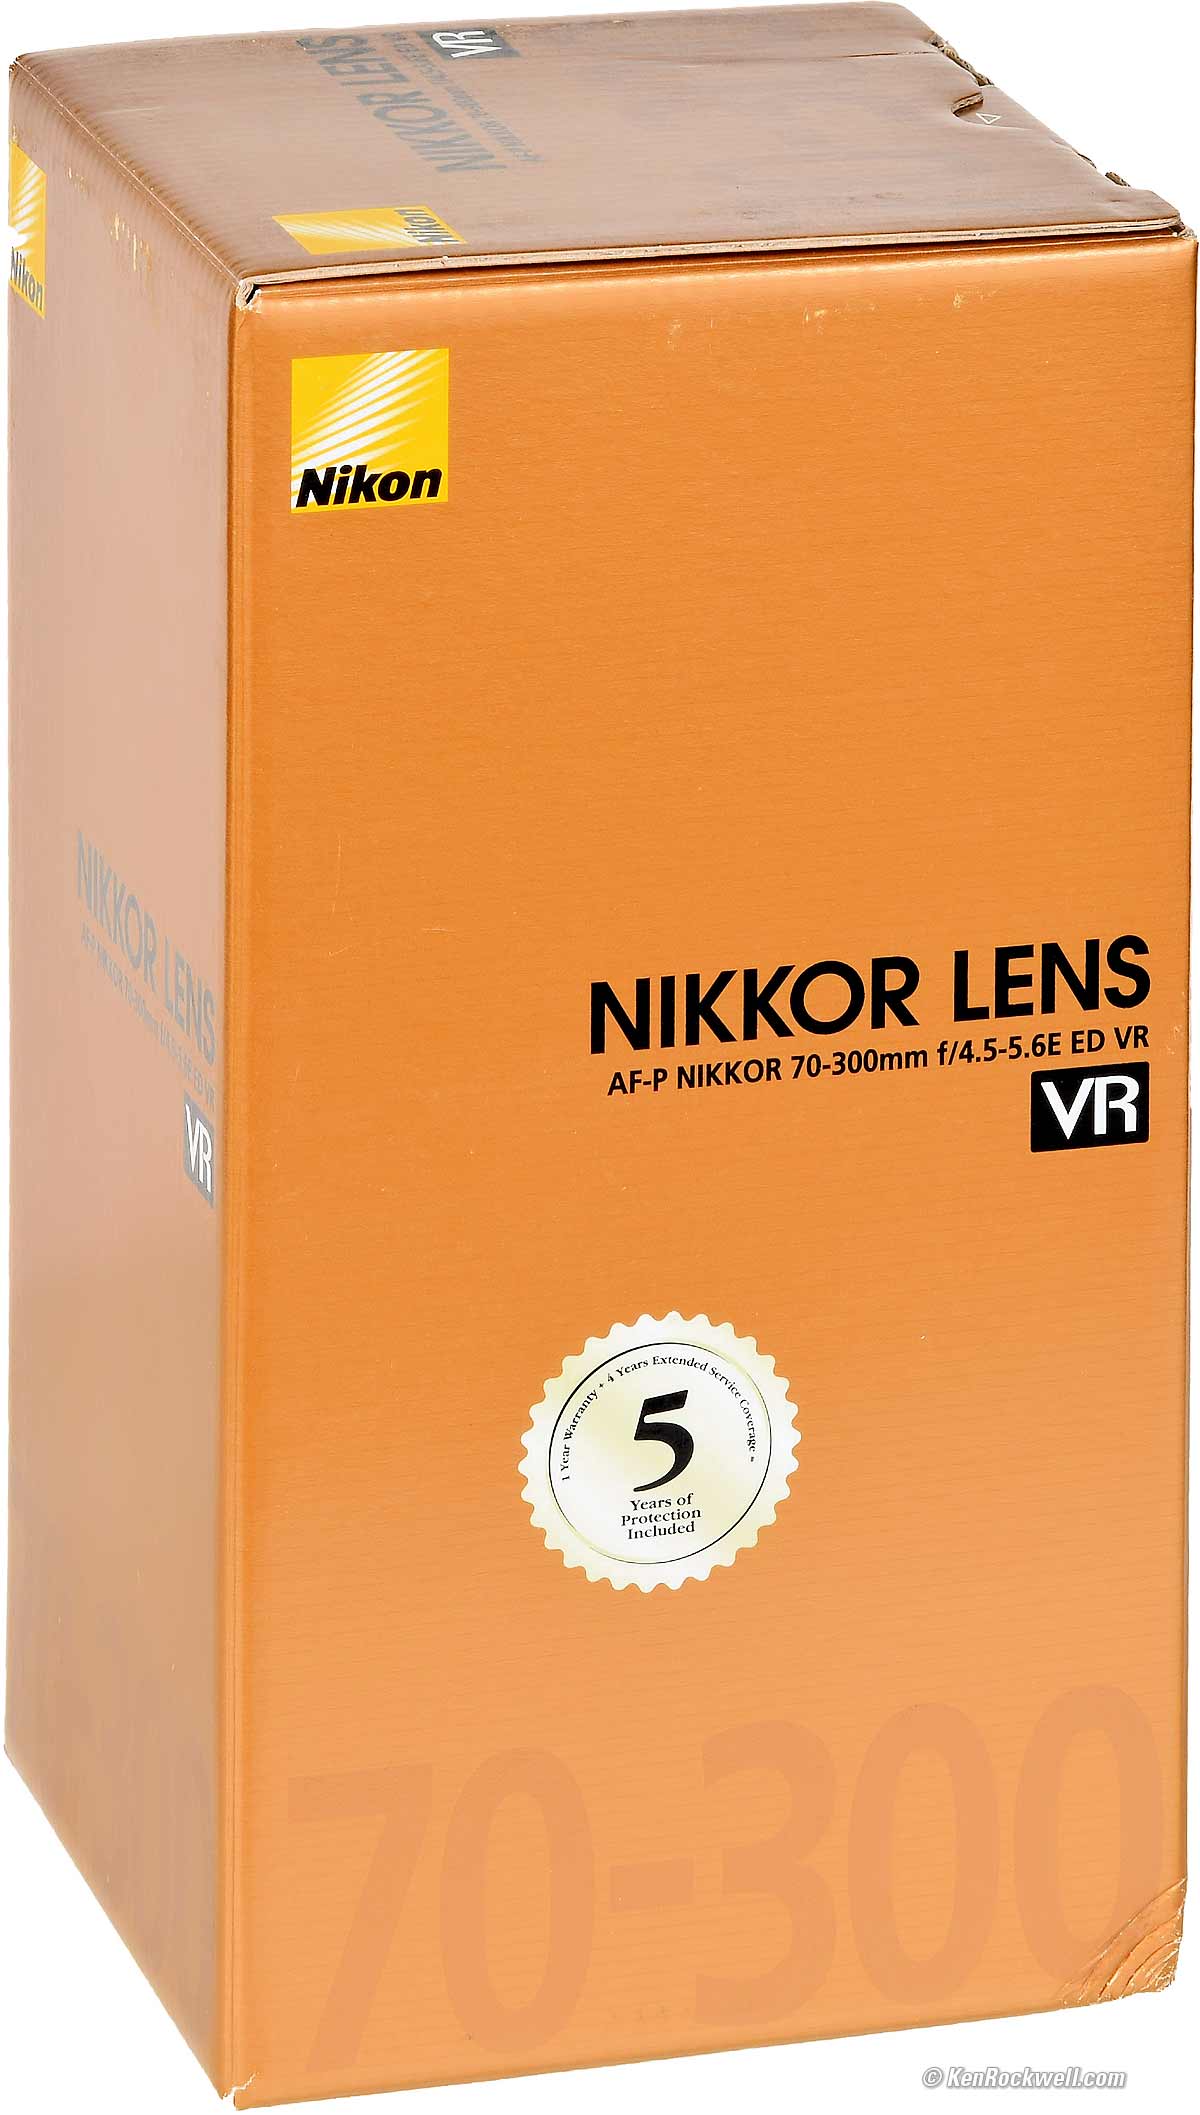 Nikon 70-300mm VR FX AF-P Review